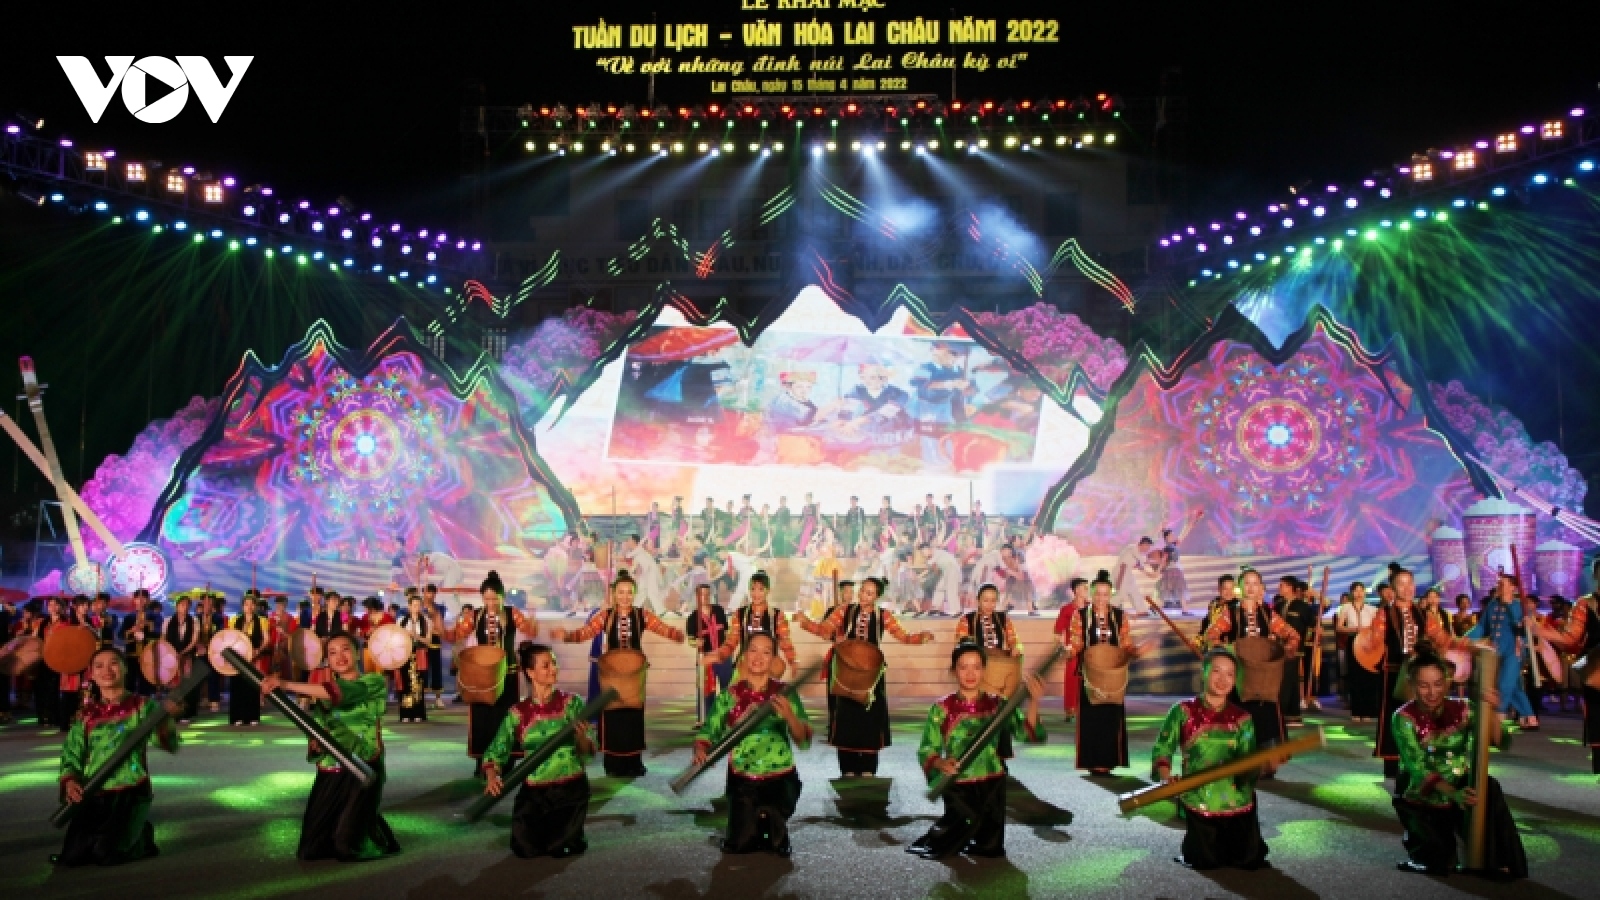 Đặc sắc đêm hội Tuần Du lịch - Văn hóa tại Lai Châu